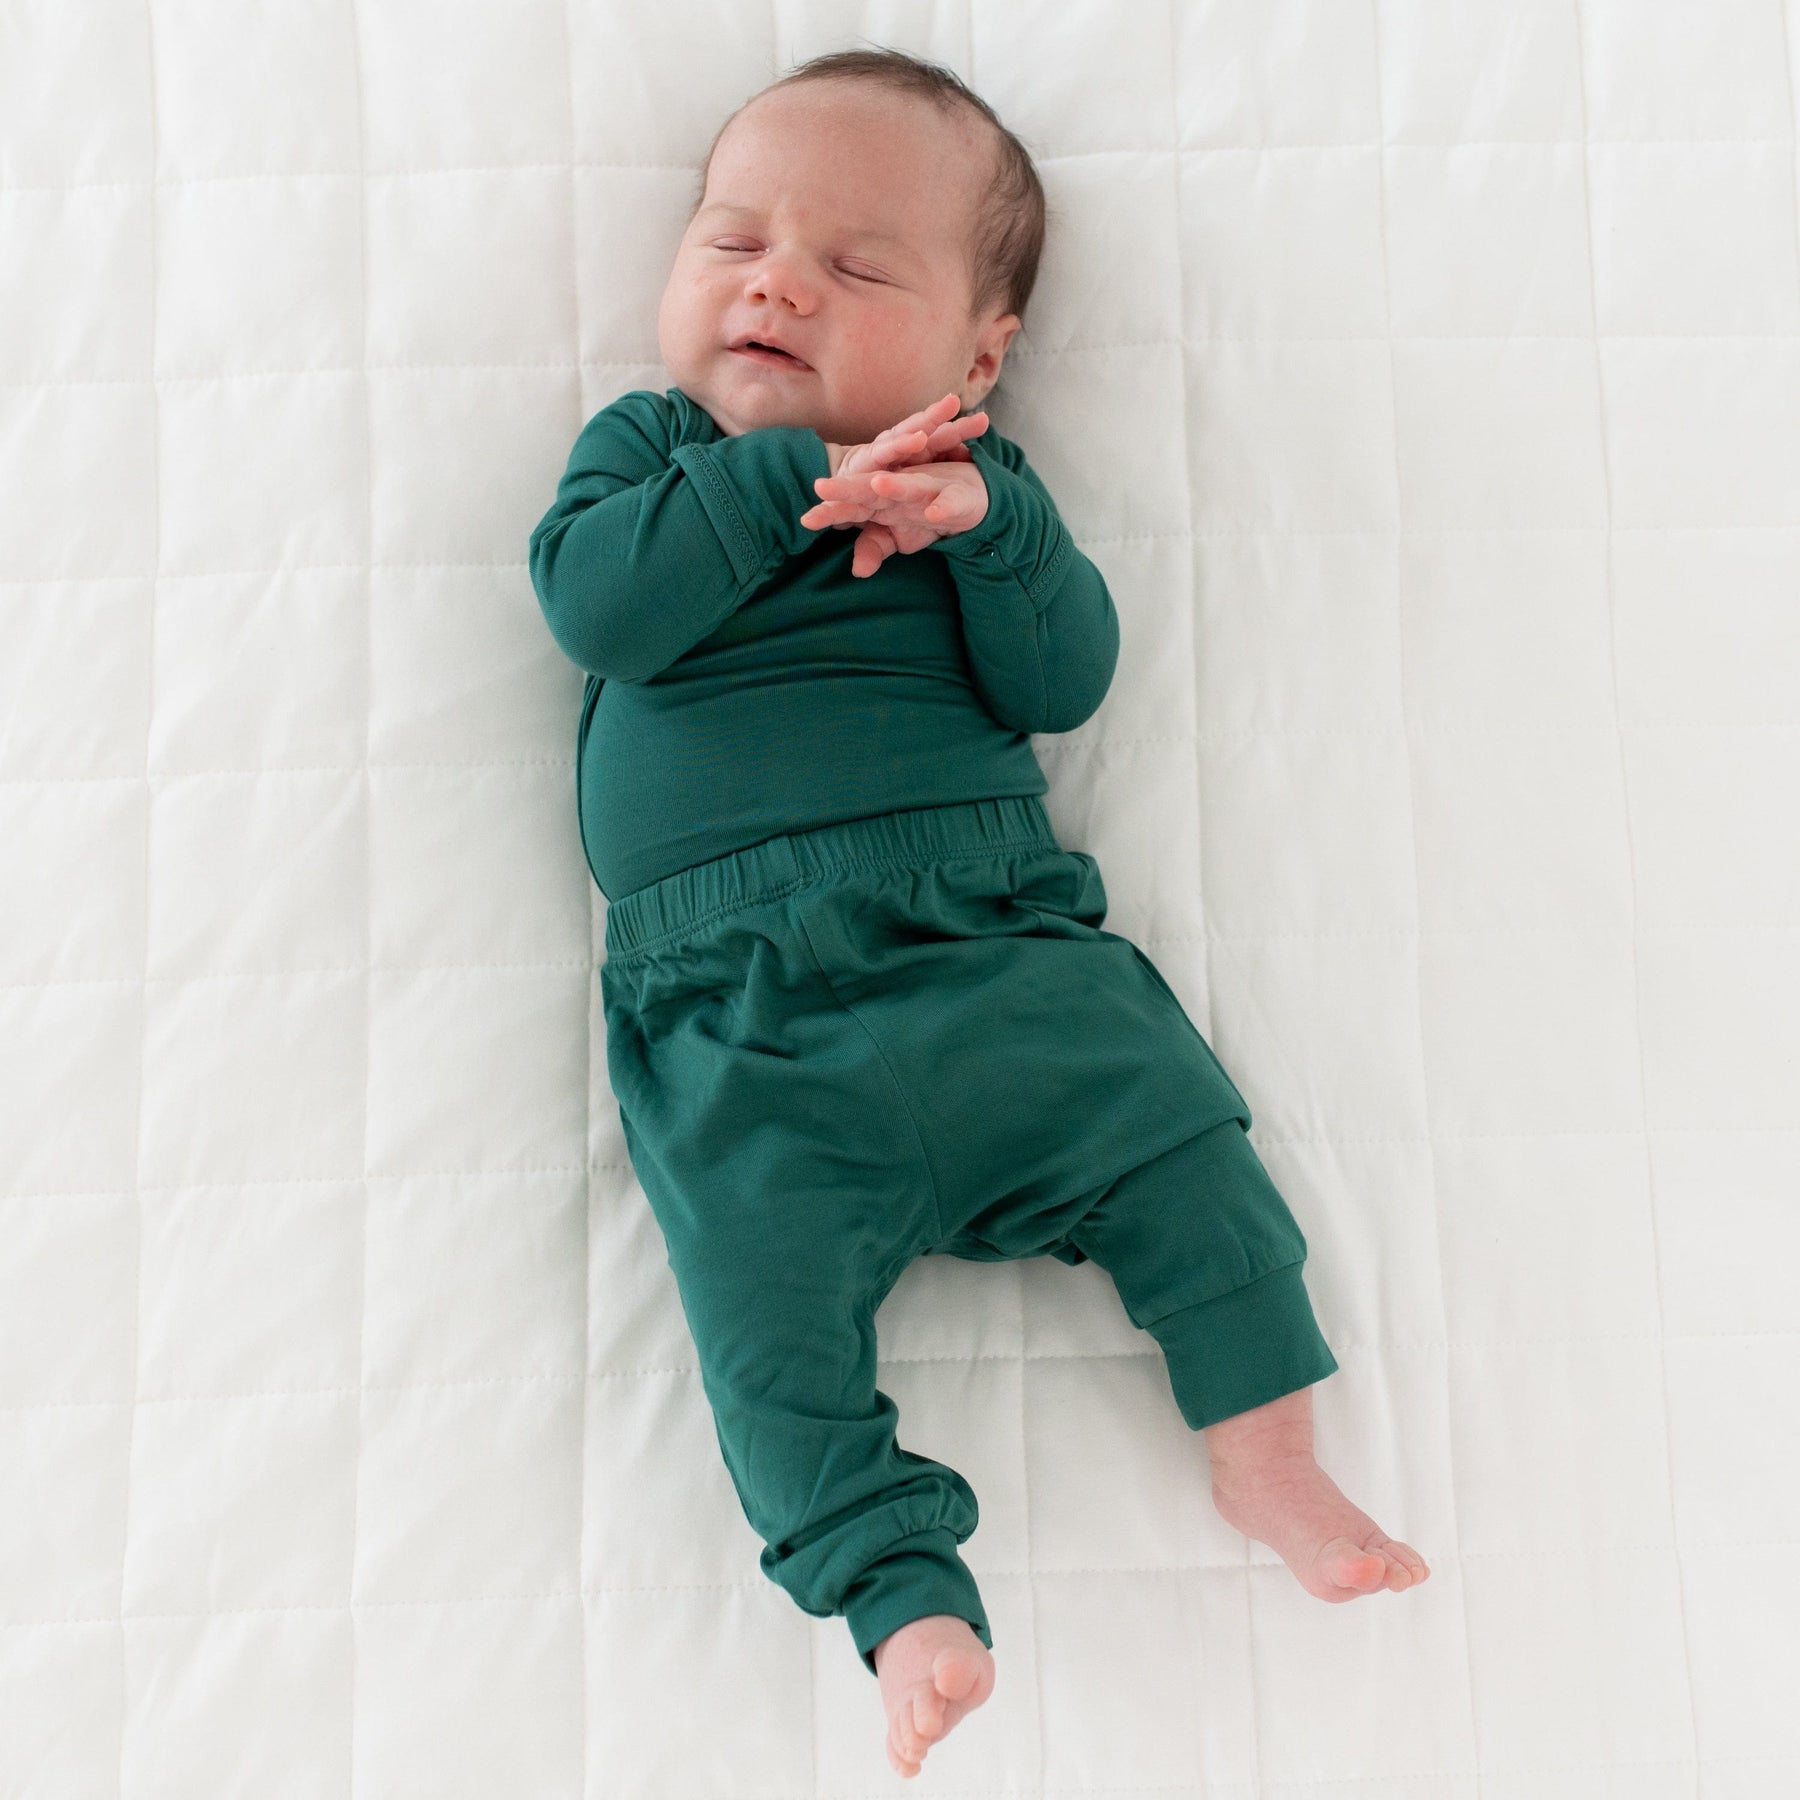 Newborn wearing Kyte Baby Long Sleeve Bodysuit in Emerald